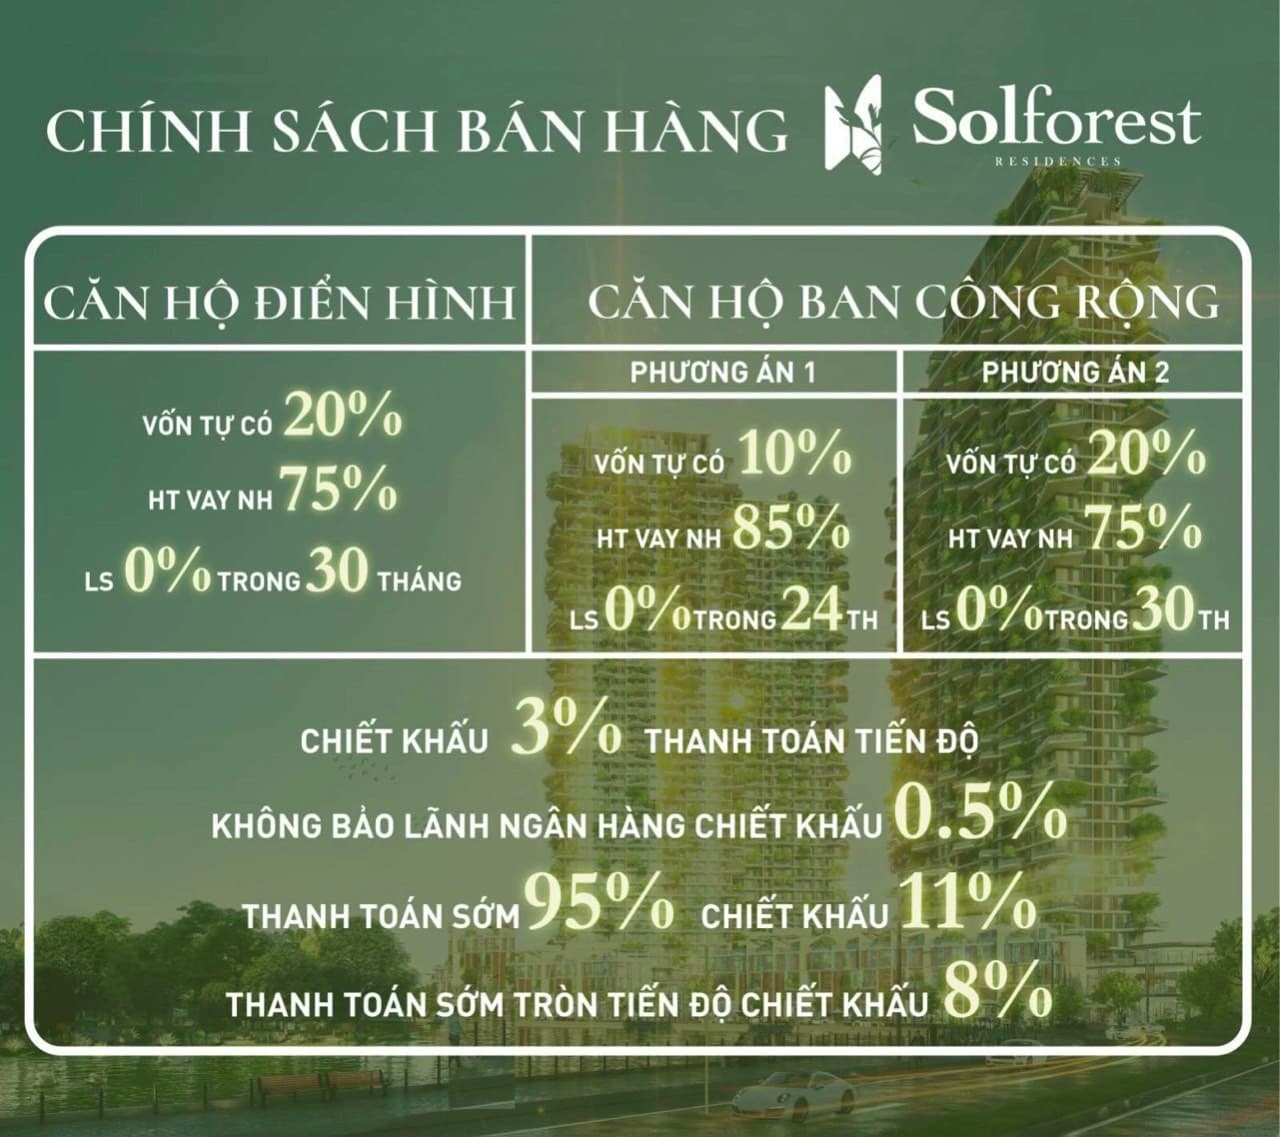 Chính sách bán hàng Sol Forest Ecopark